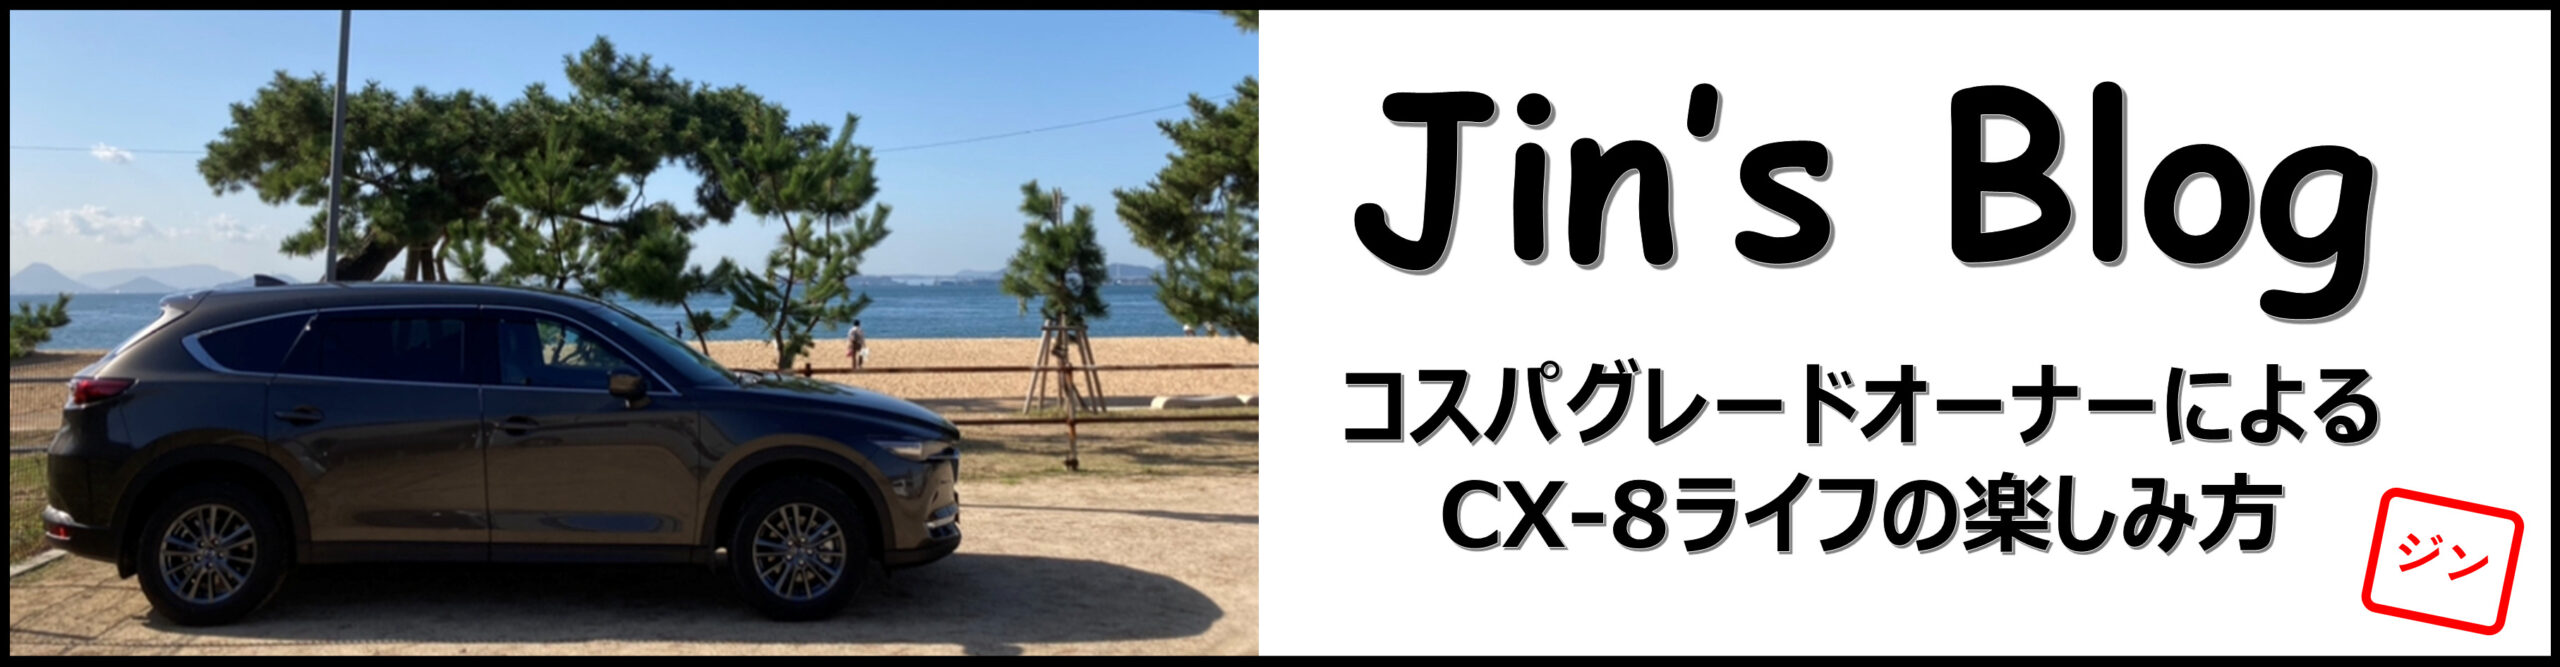 Jin's Blog 〜コスパグレードオーナーによるCX-8ライフの楽しみ方～